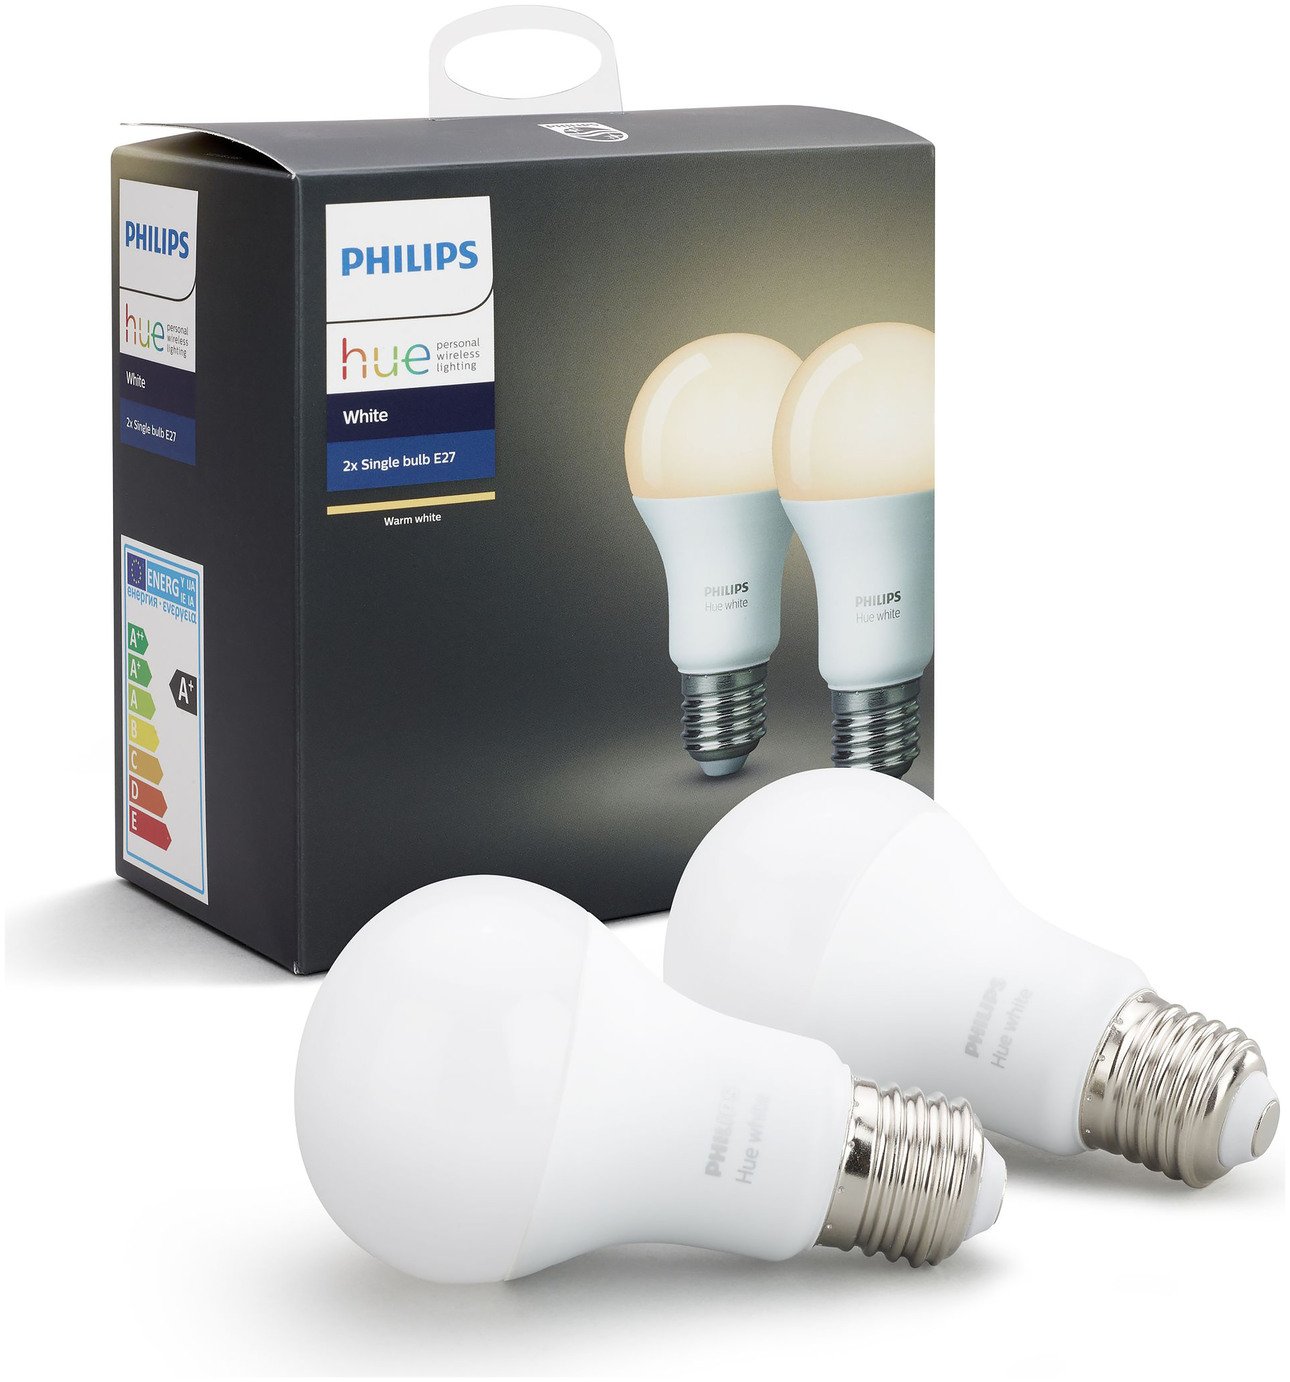 Philips Hue White E27 Bulbs review